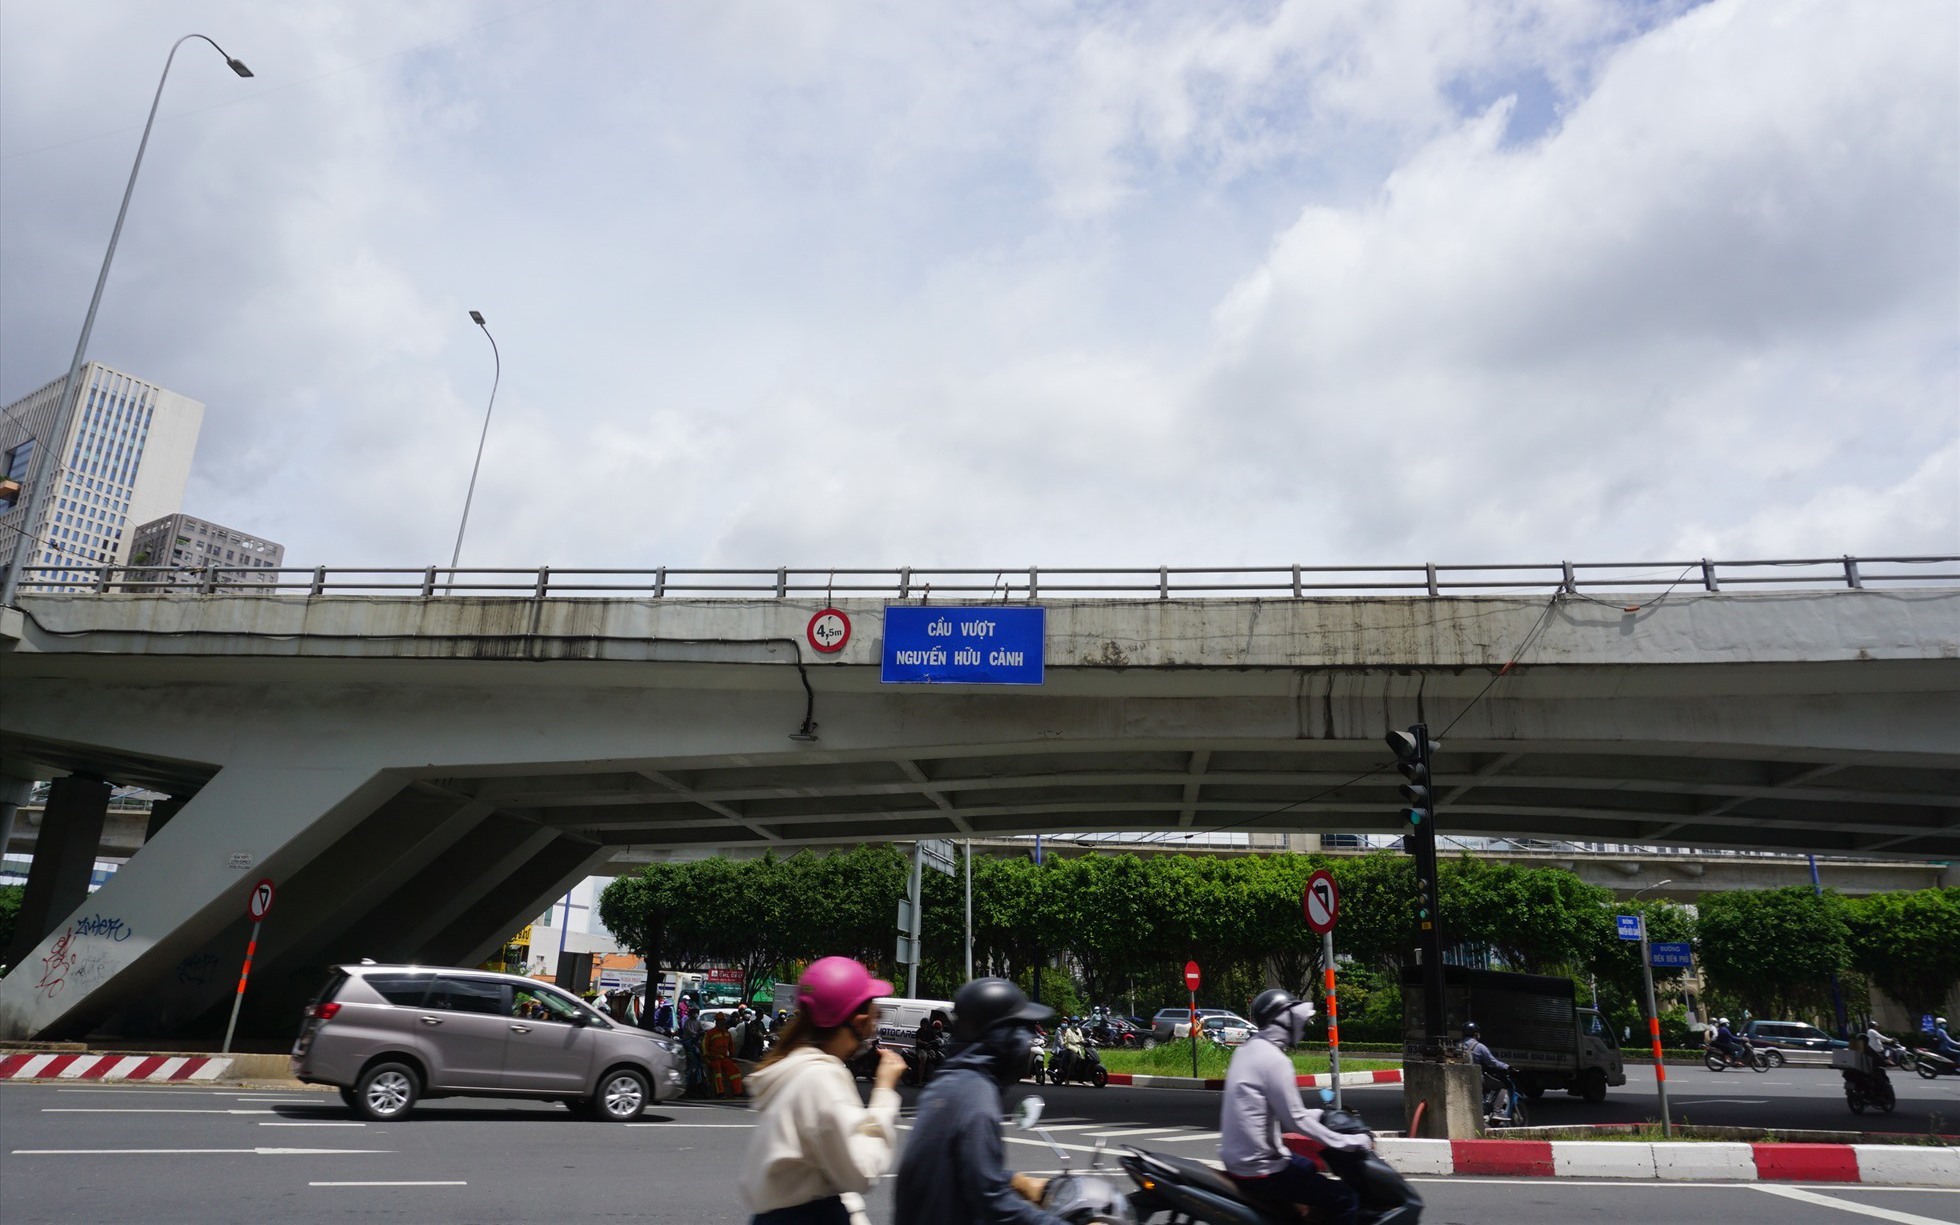 Cầu vượt Nguyễn Hữu Cảnh cho phép xe máy lưu thông qua cầu - Ảnh 1.